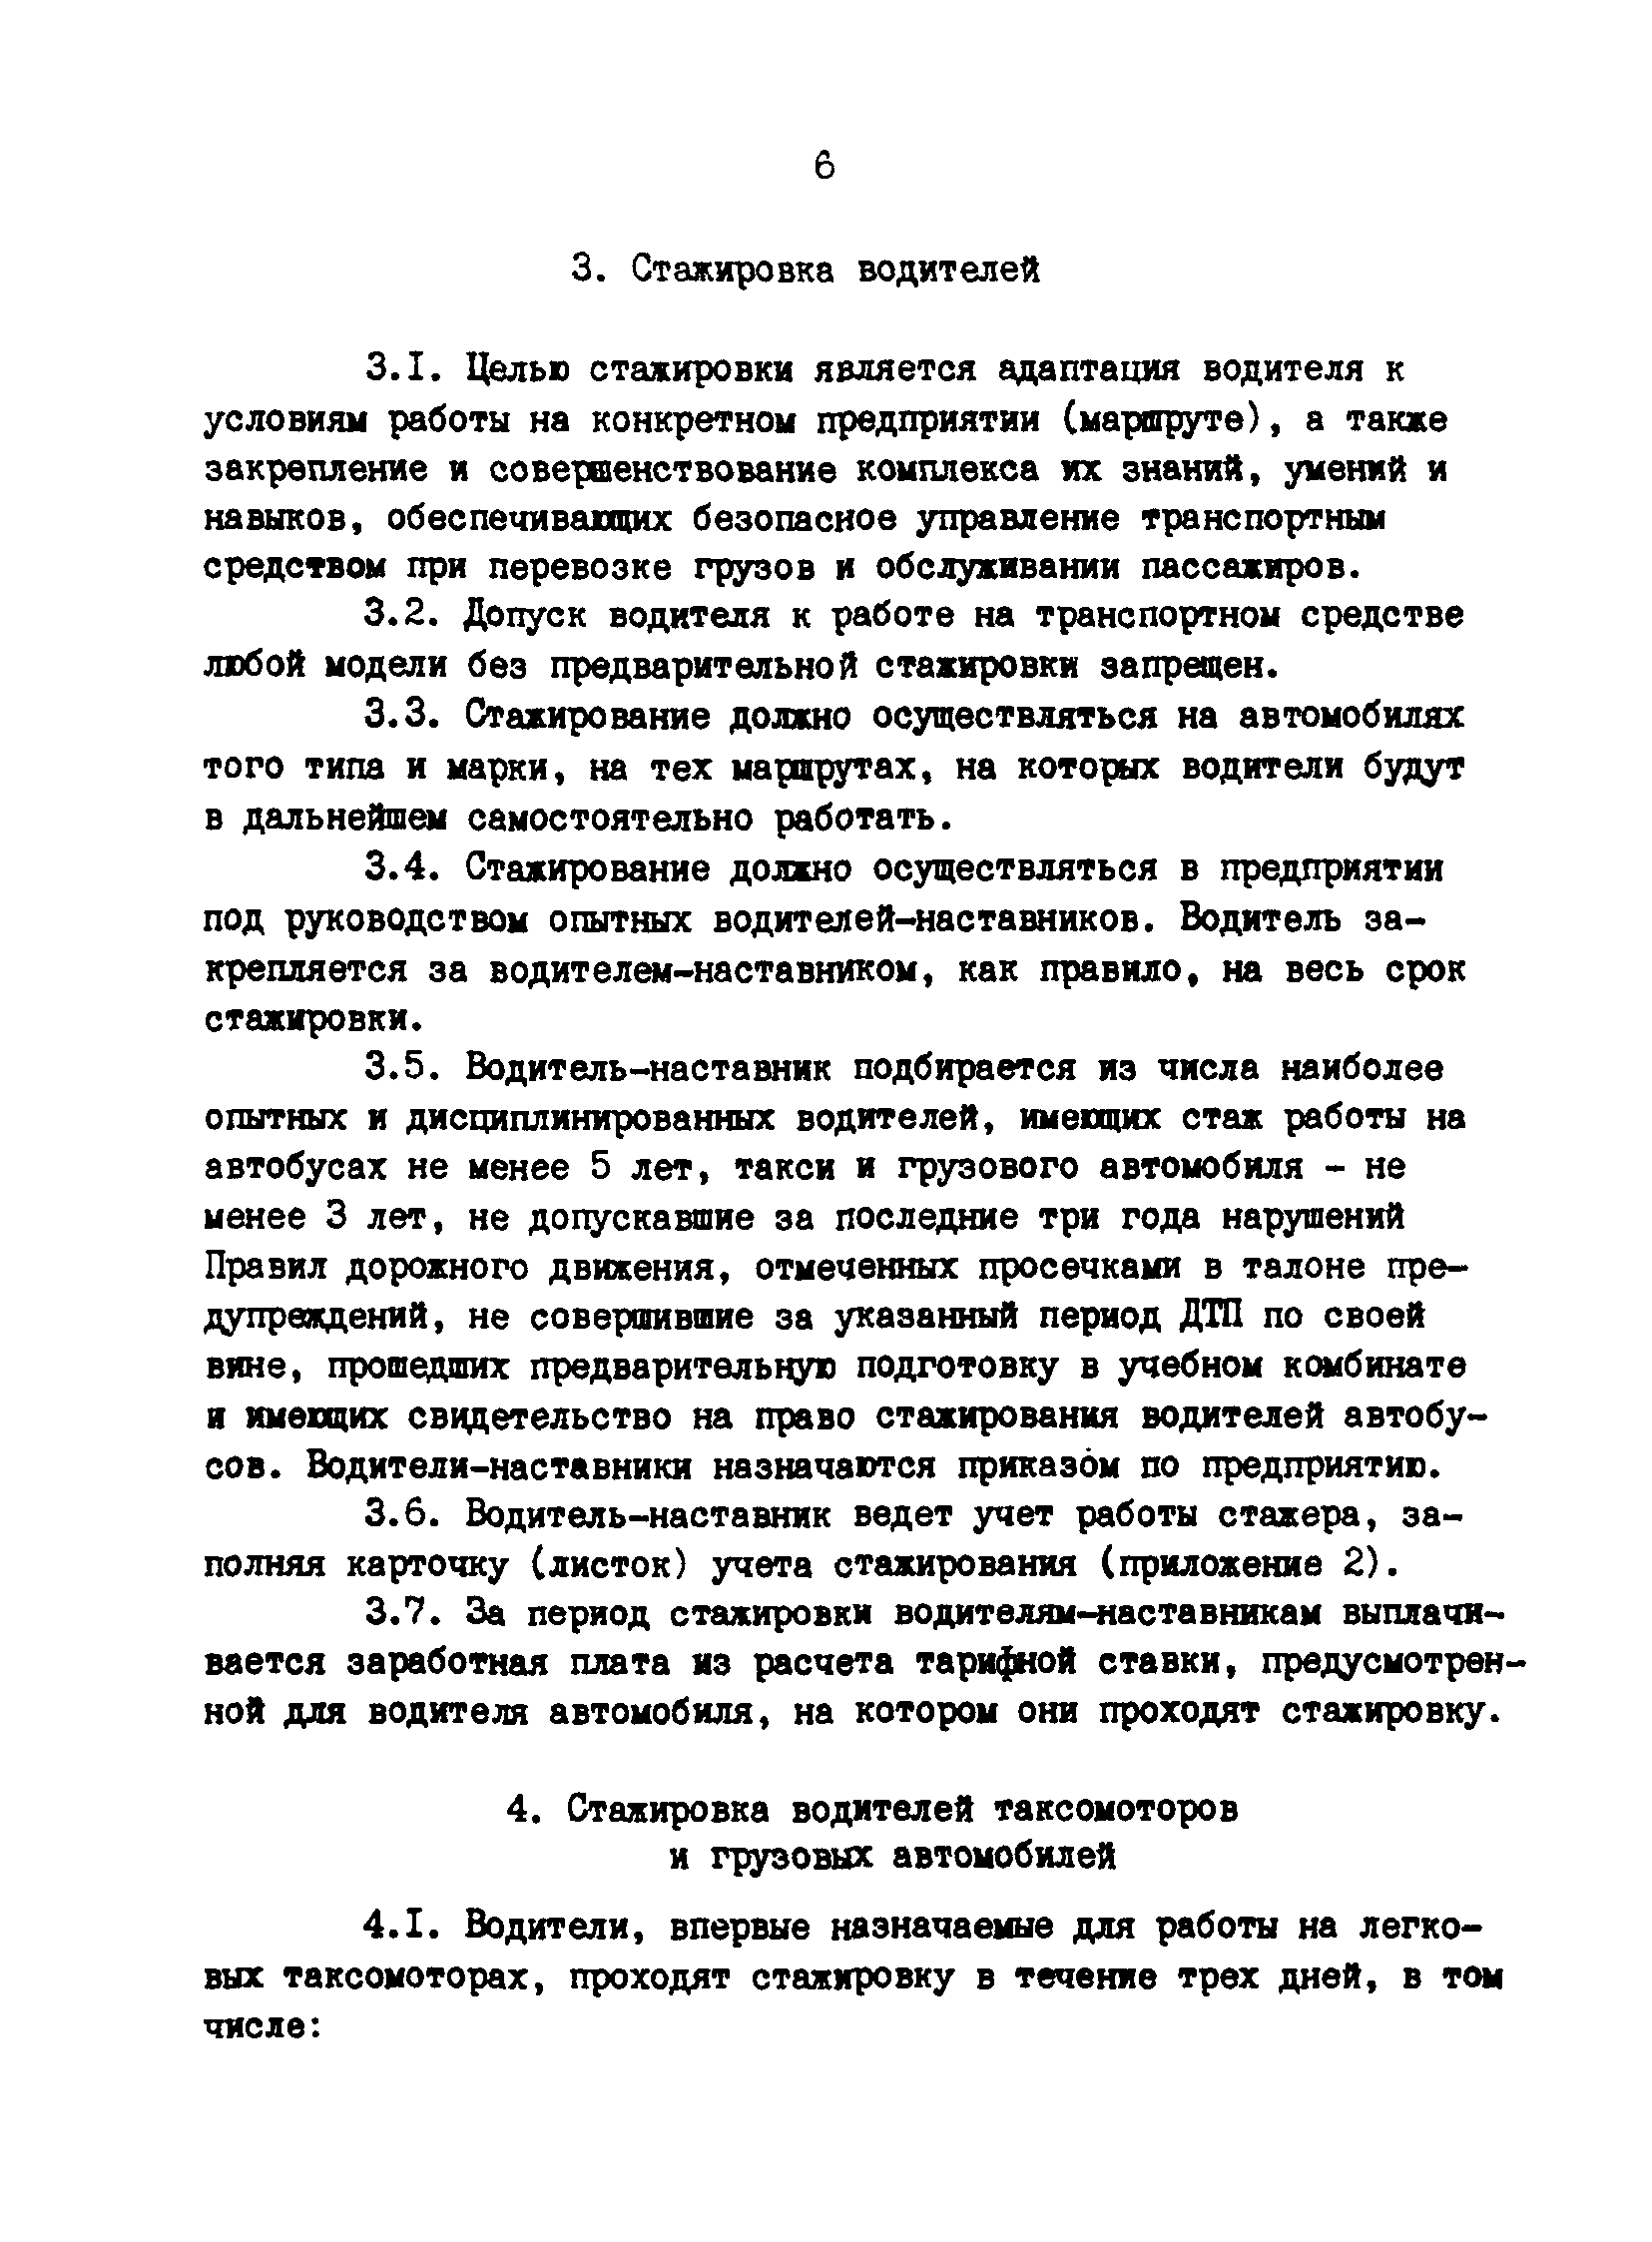 РД 200-РСФСР-12-0071-86-12